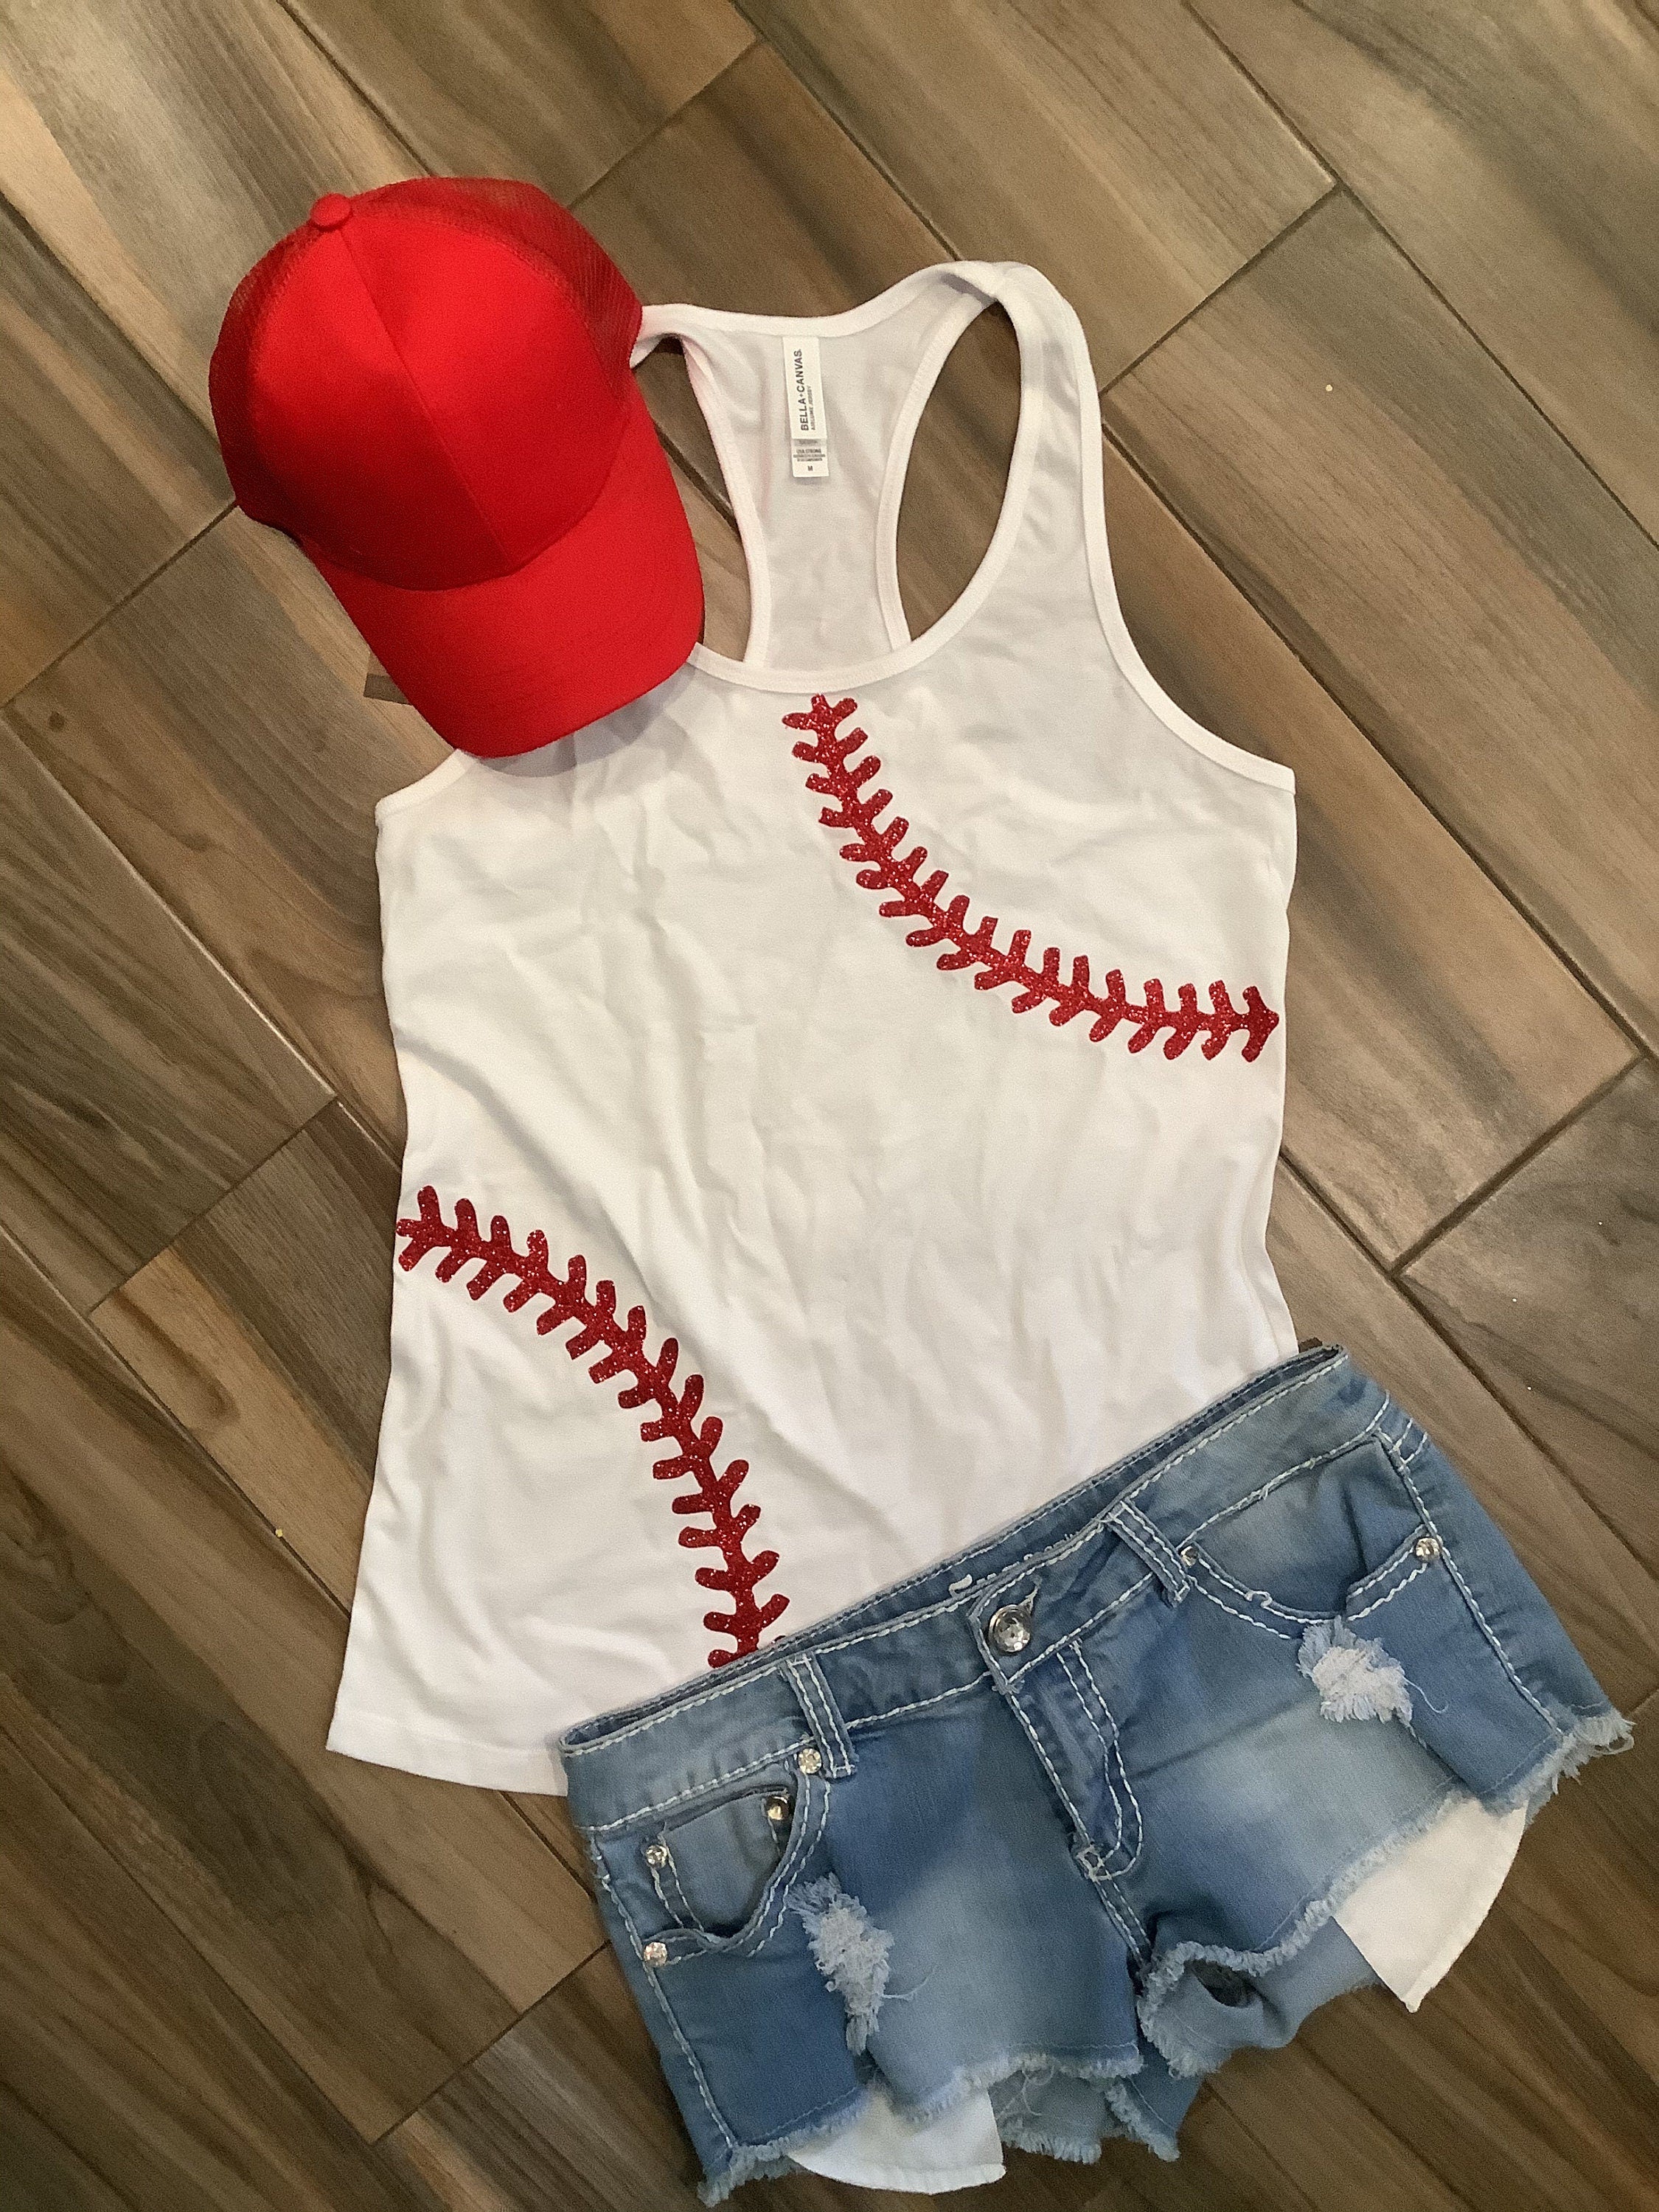 Boston Red Sox Inspired Glitter Shirt or Tank Top: Baseball Fan Gear &  Apparel for Women – LuLu Grace